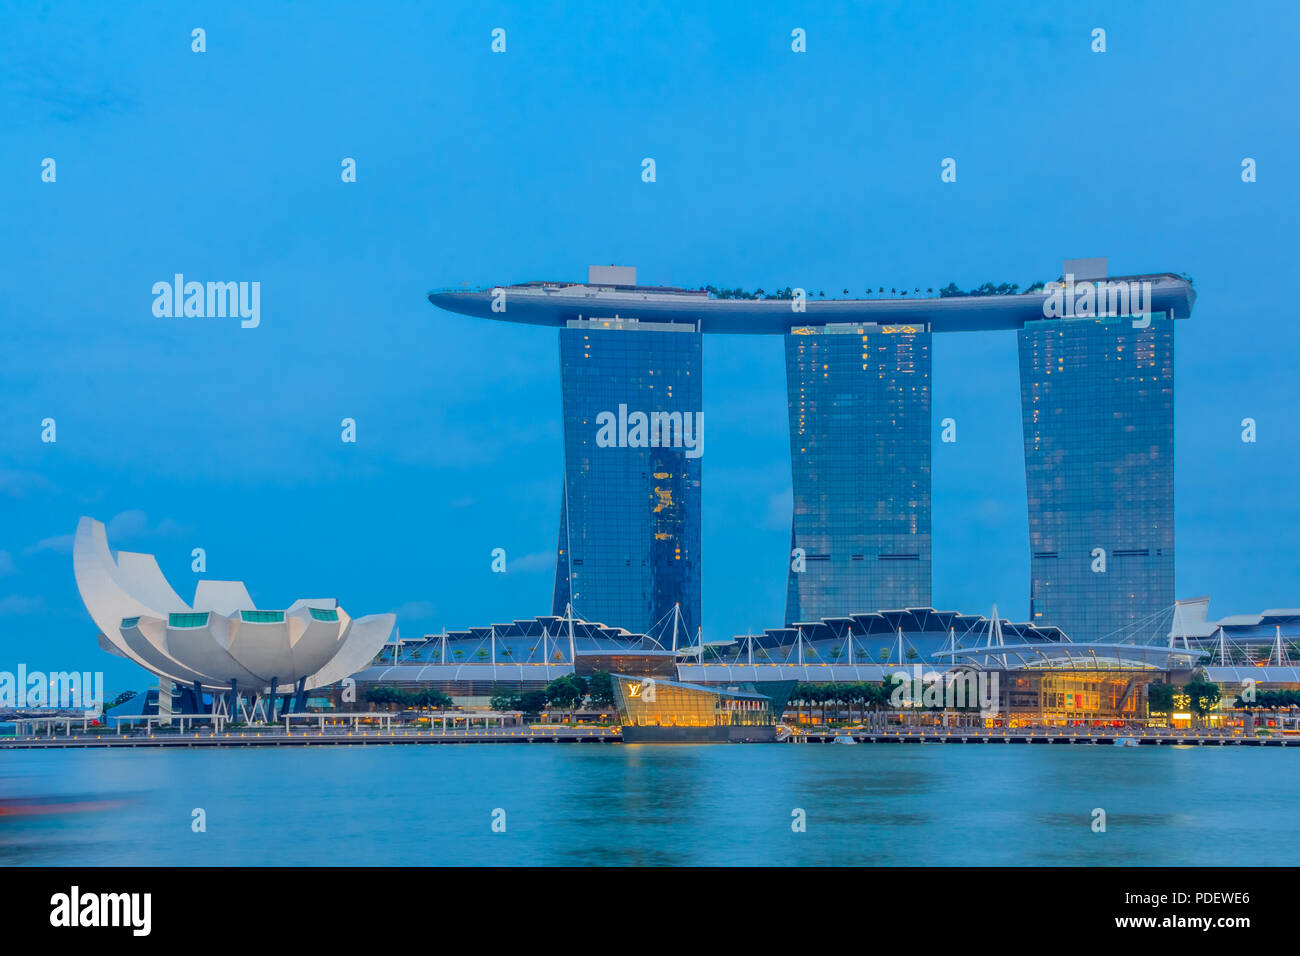 Singapour - Le 20 janvier 2014 : l'hôtel en forme de planche de surf luxueuses et Marina Bay Sands casino et lotus-inspiré Musée ArtScience avant le coucher du soleil Banque D'Images